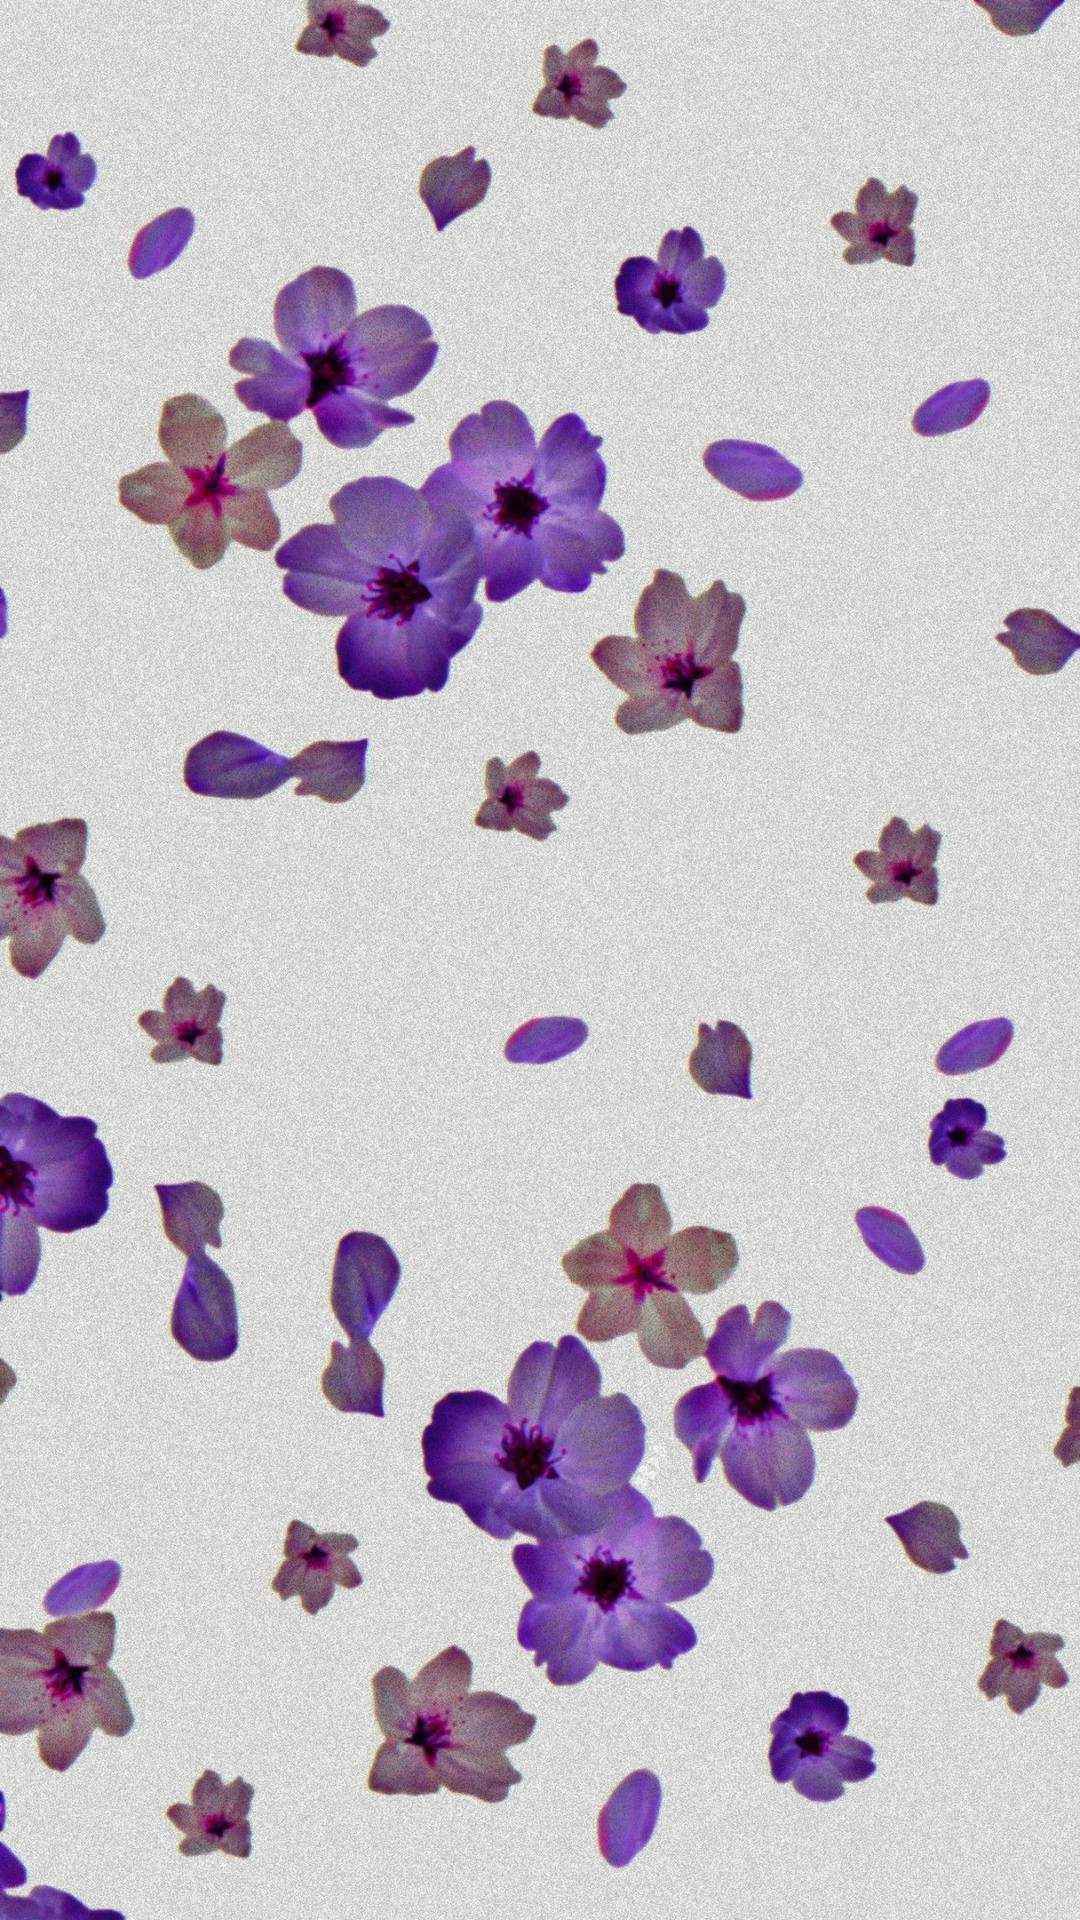 An Aesthetic Purple Flower in Bloom Wallpaper